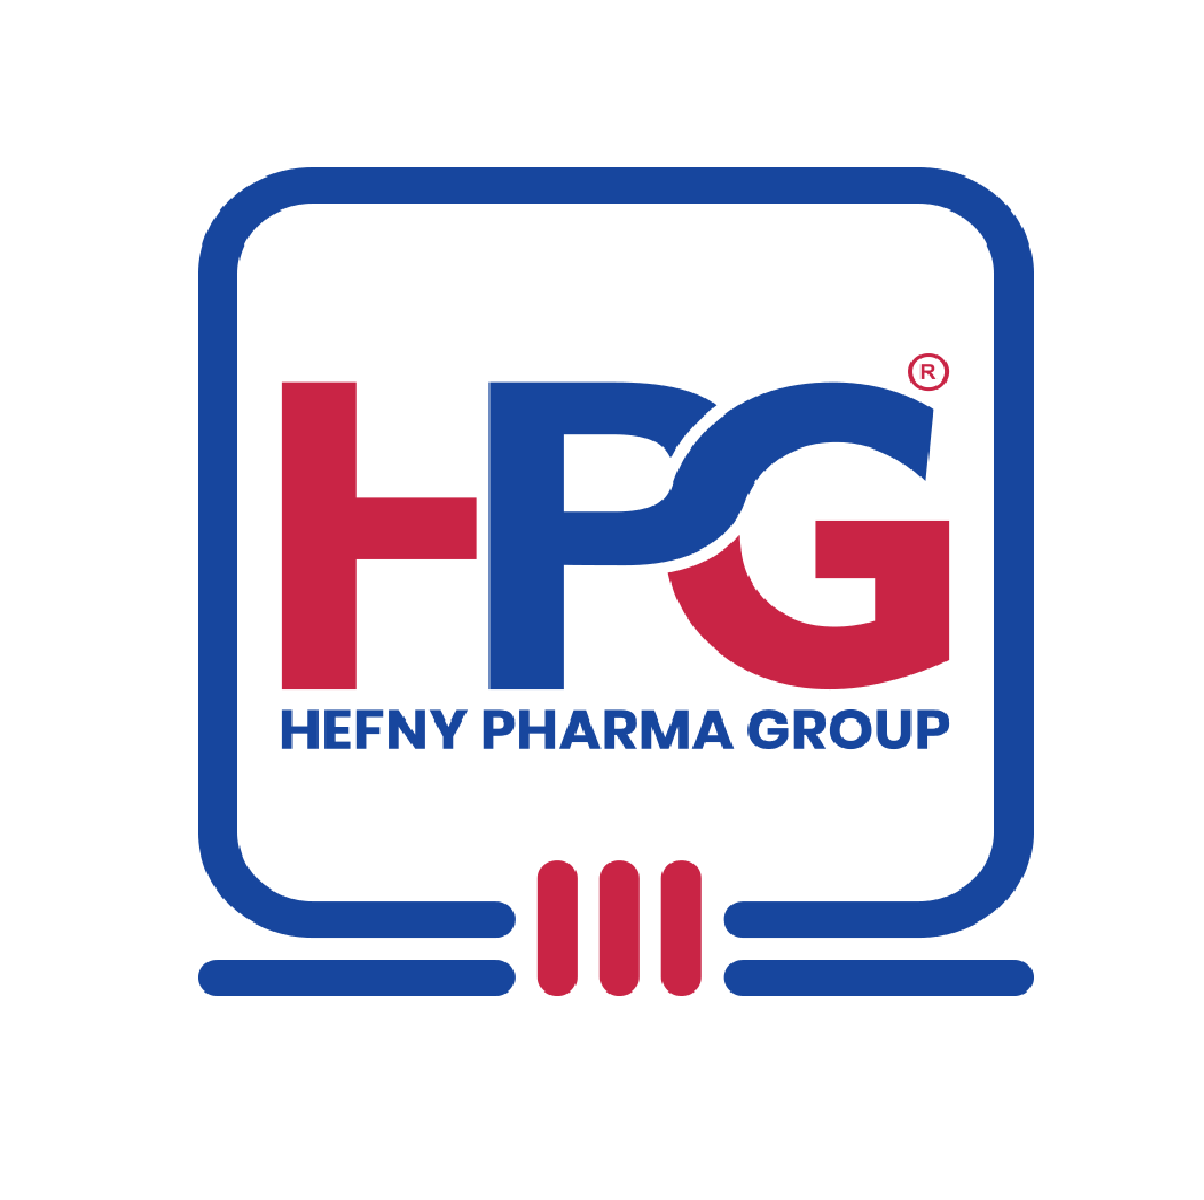 Hefny Pharma group